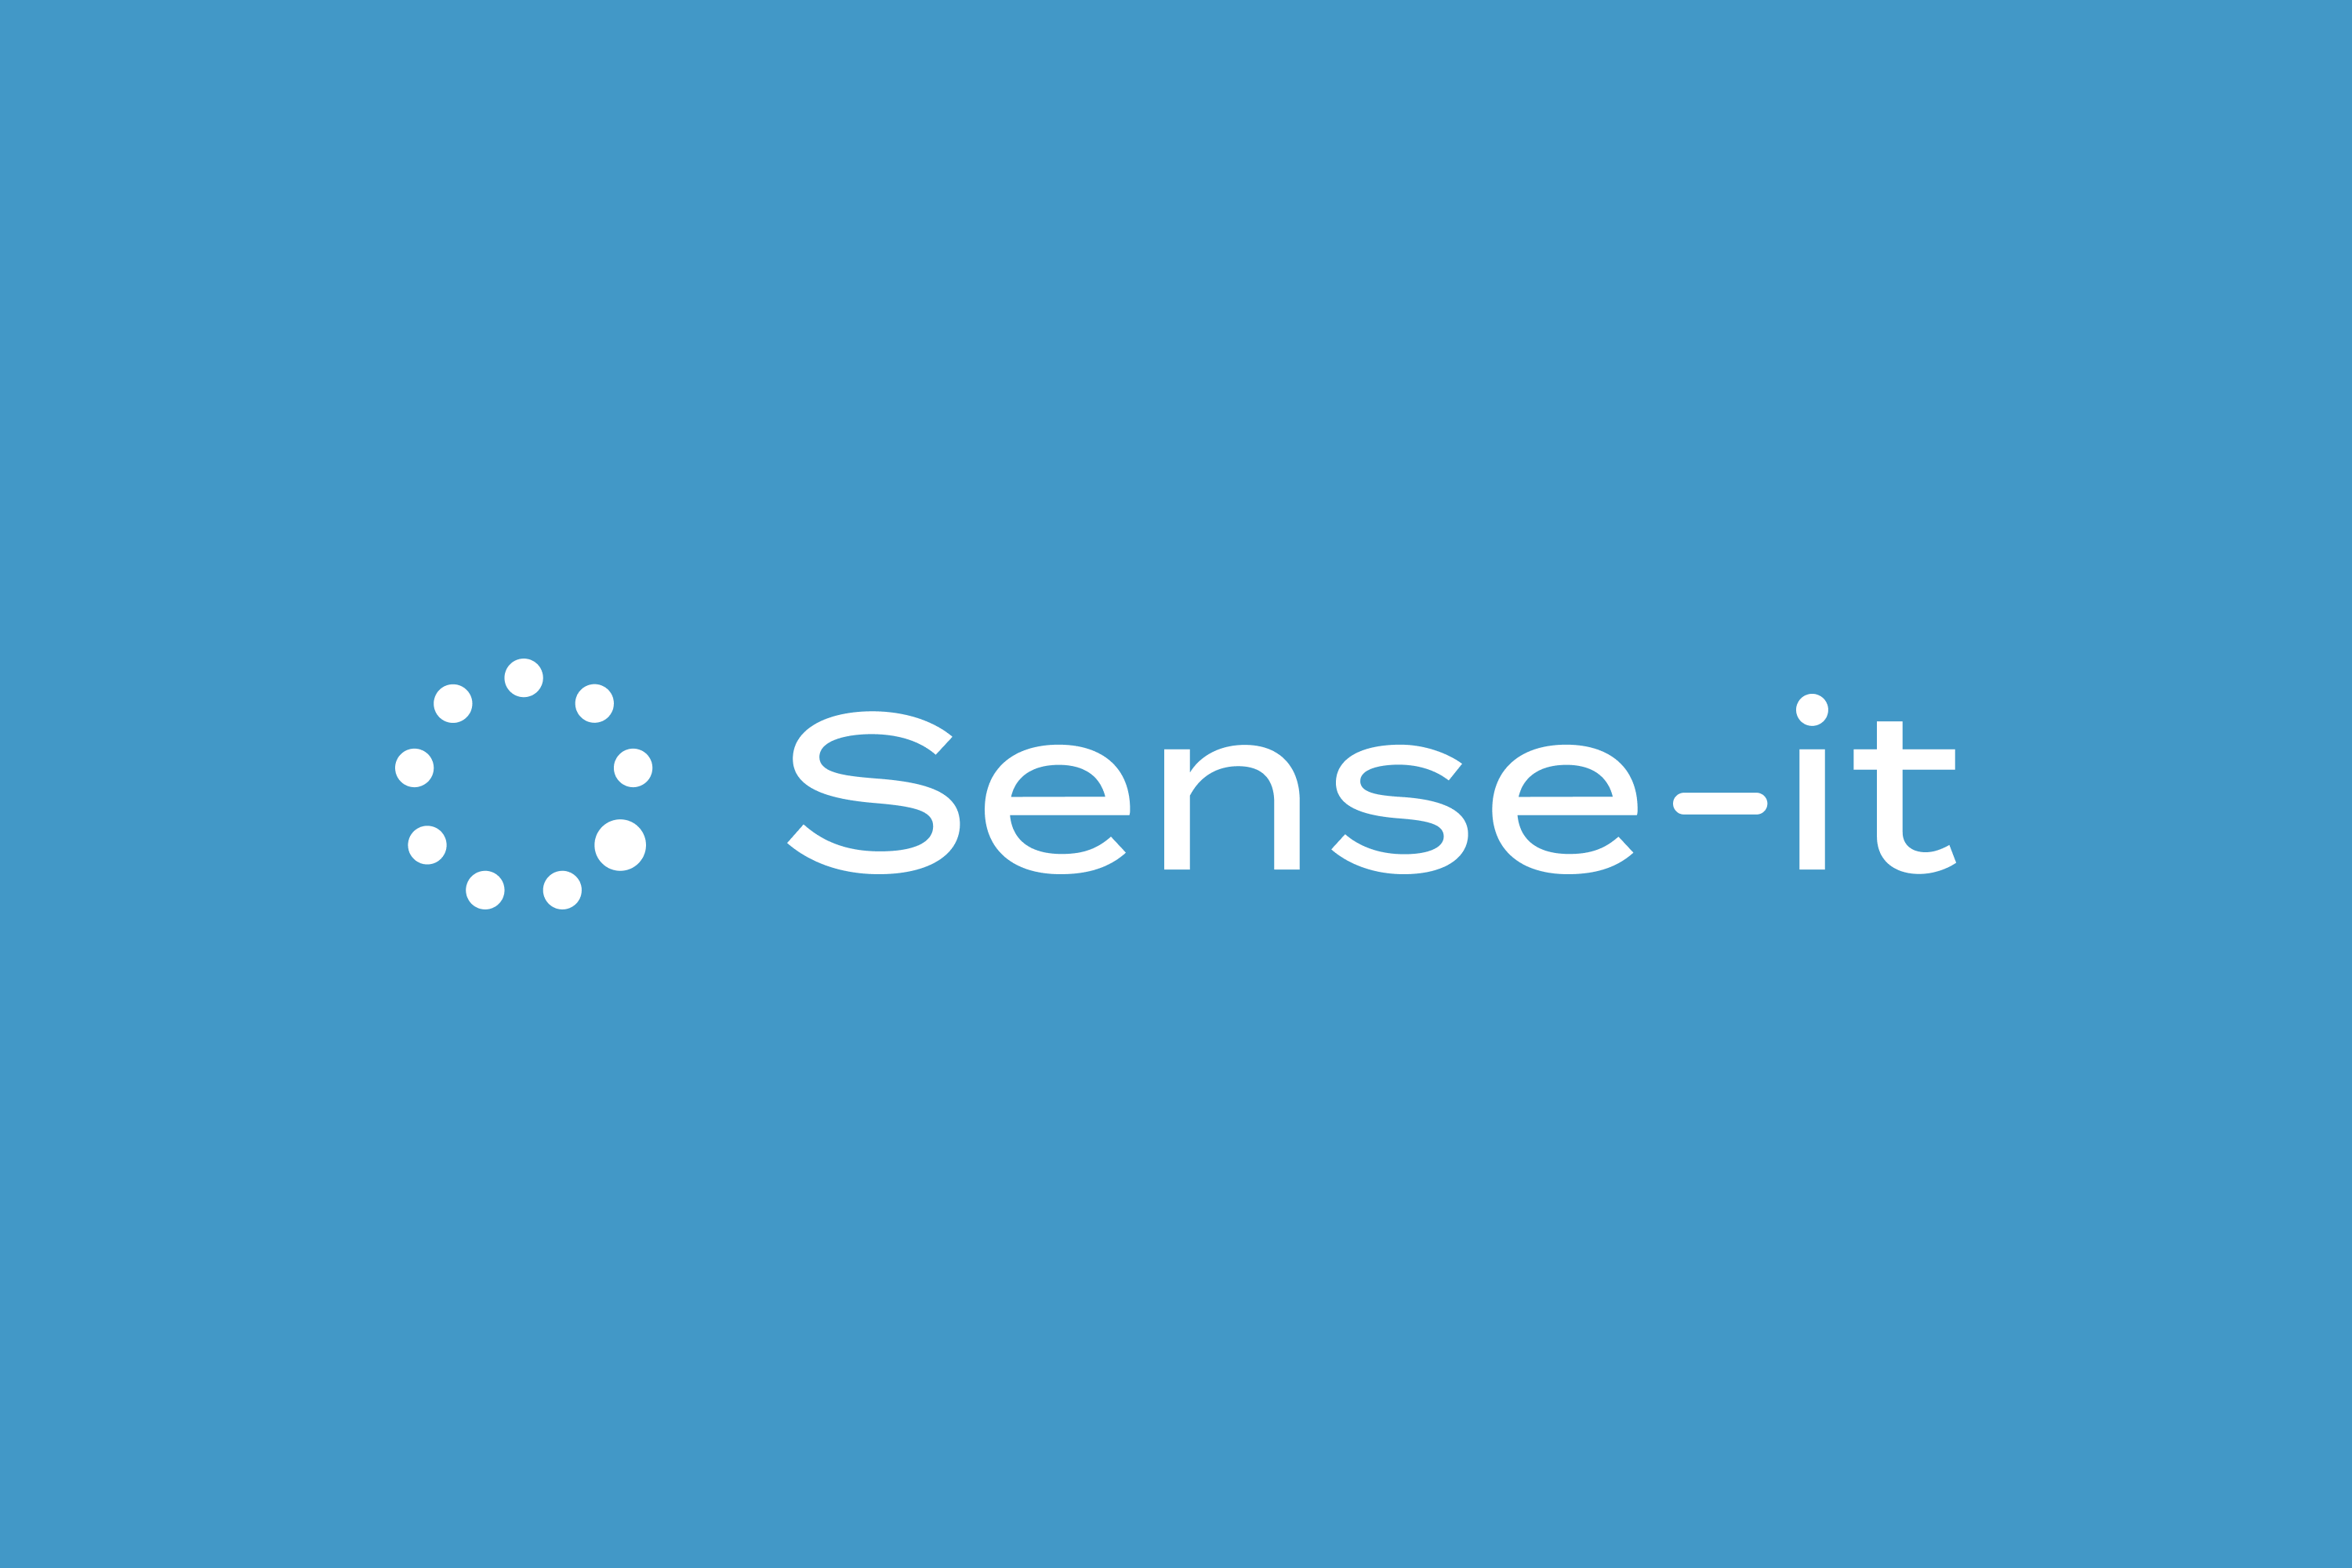 Sense-it